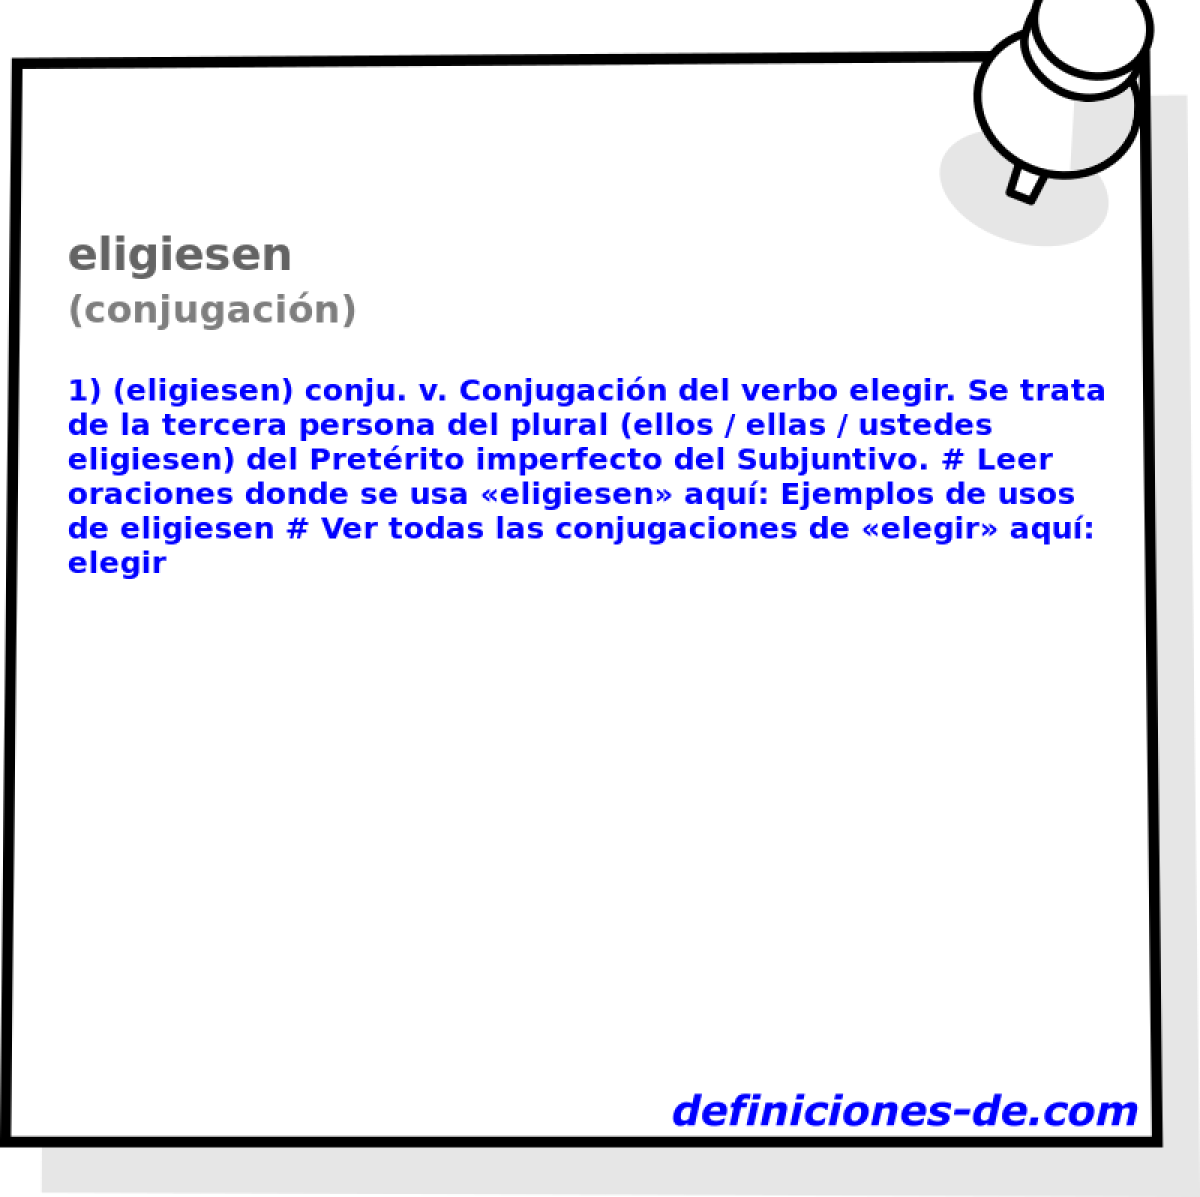 eligiesen (conjugacin)